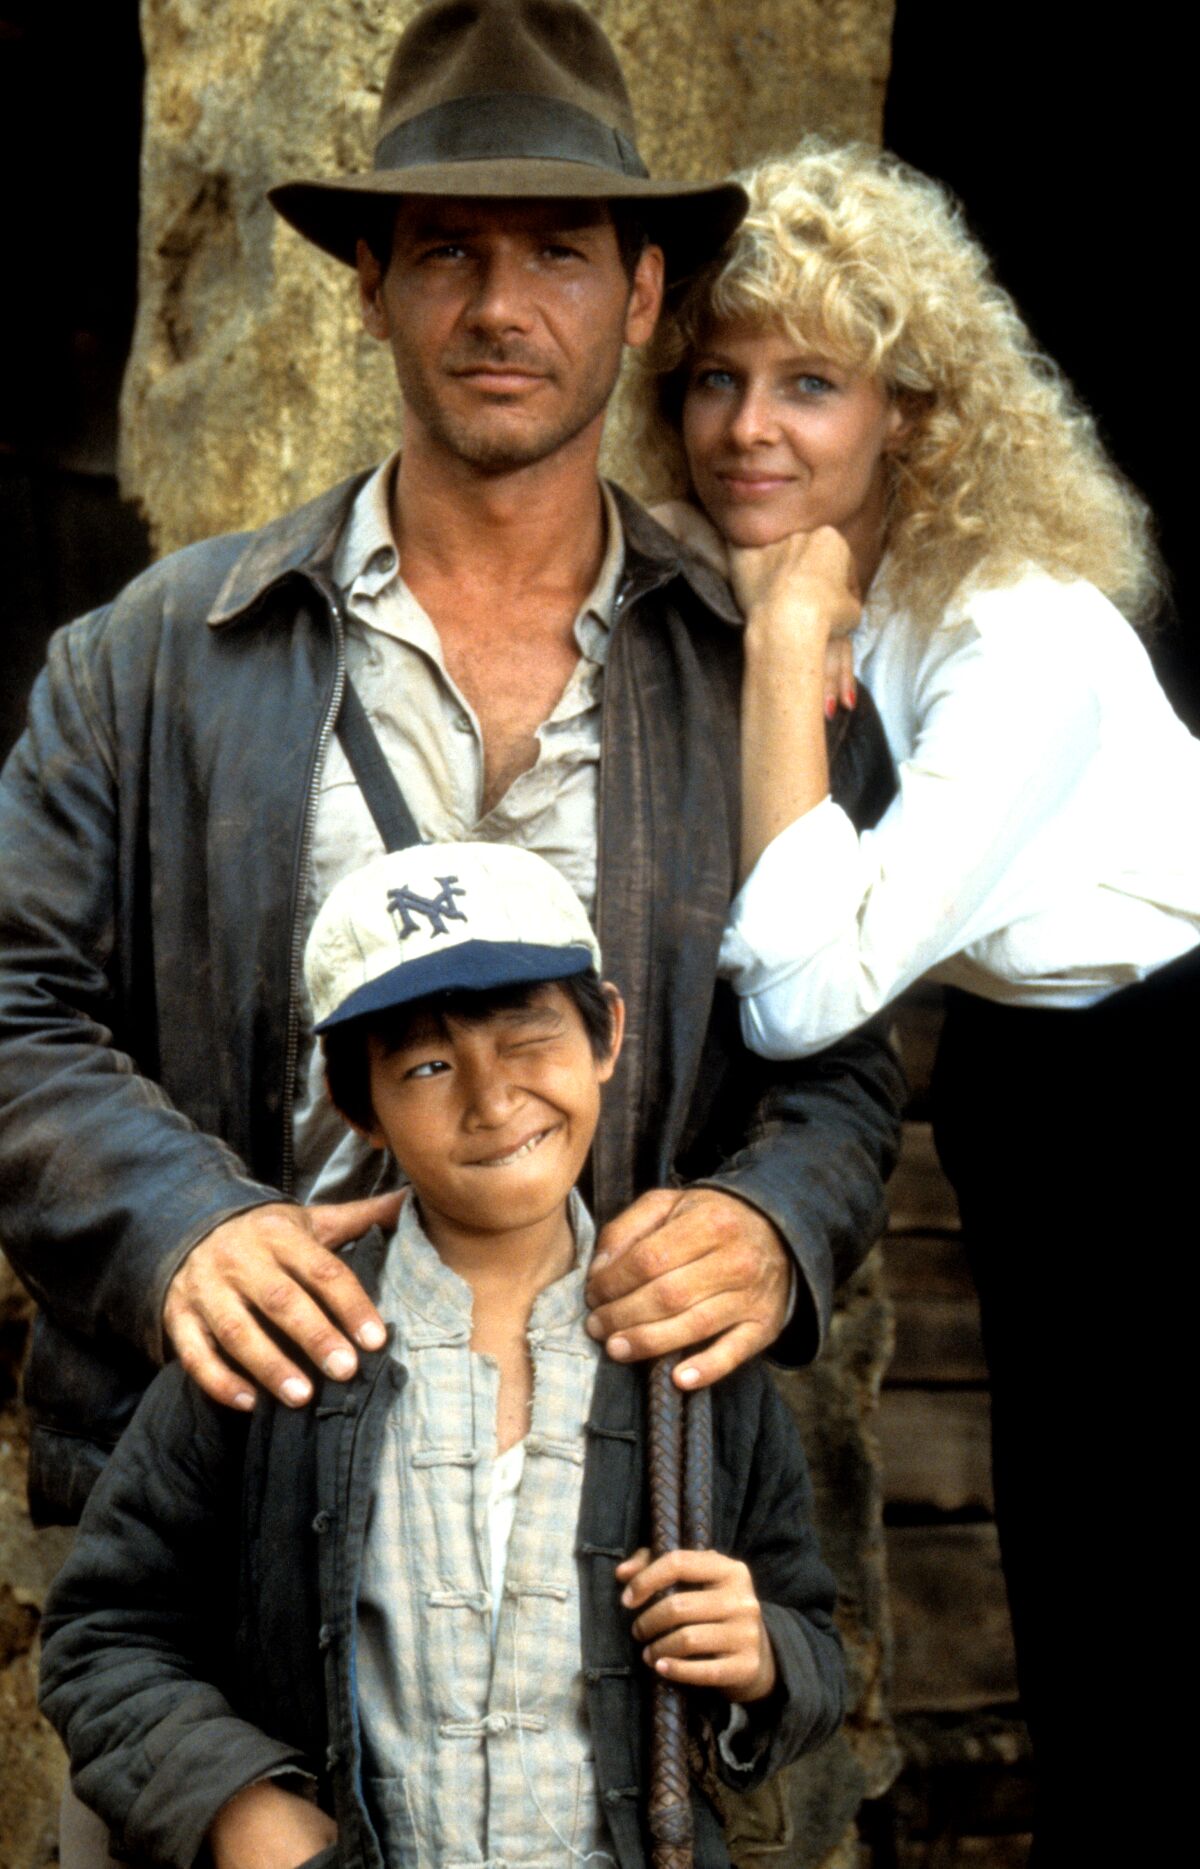 Un homme avec un chapeau marron et une femme aux cheveux blonds bouclés posant avec un enfant dans une casquette de baseball